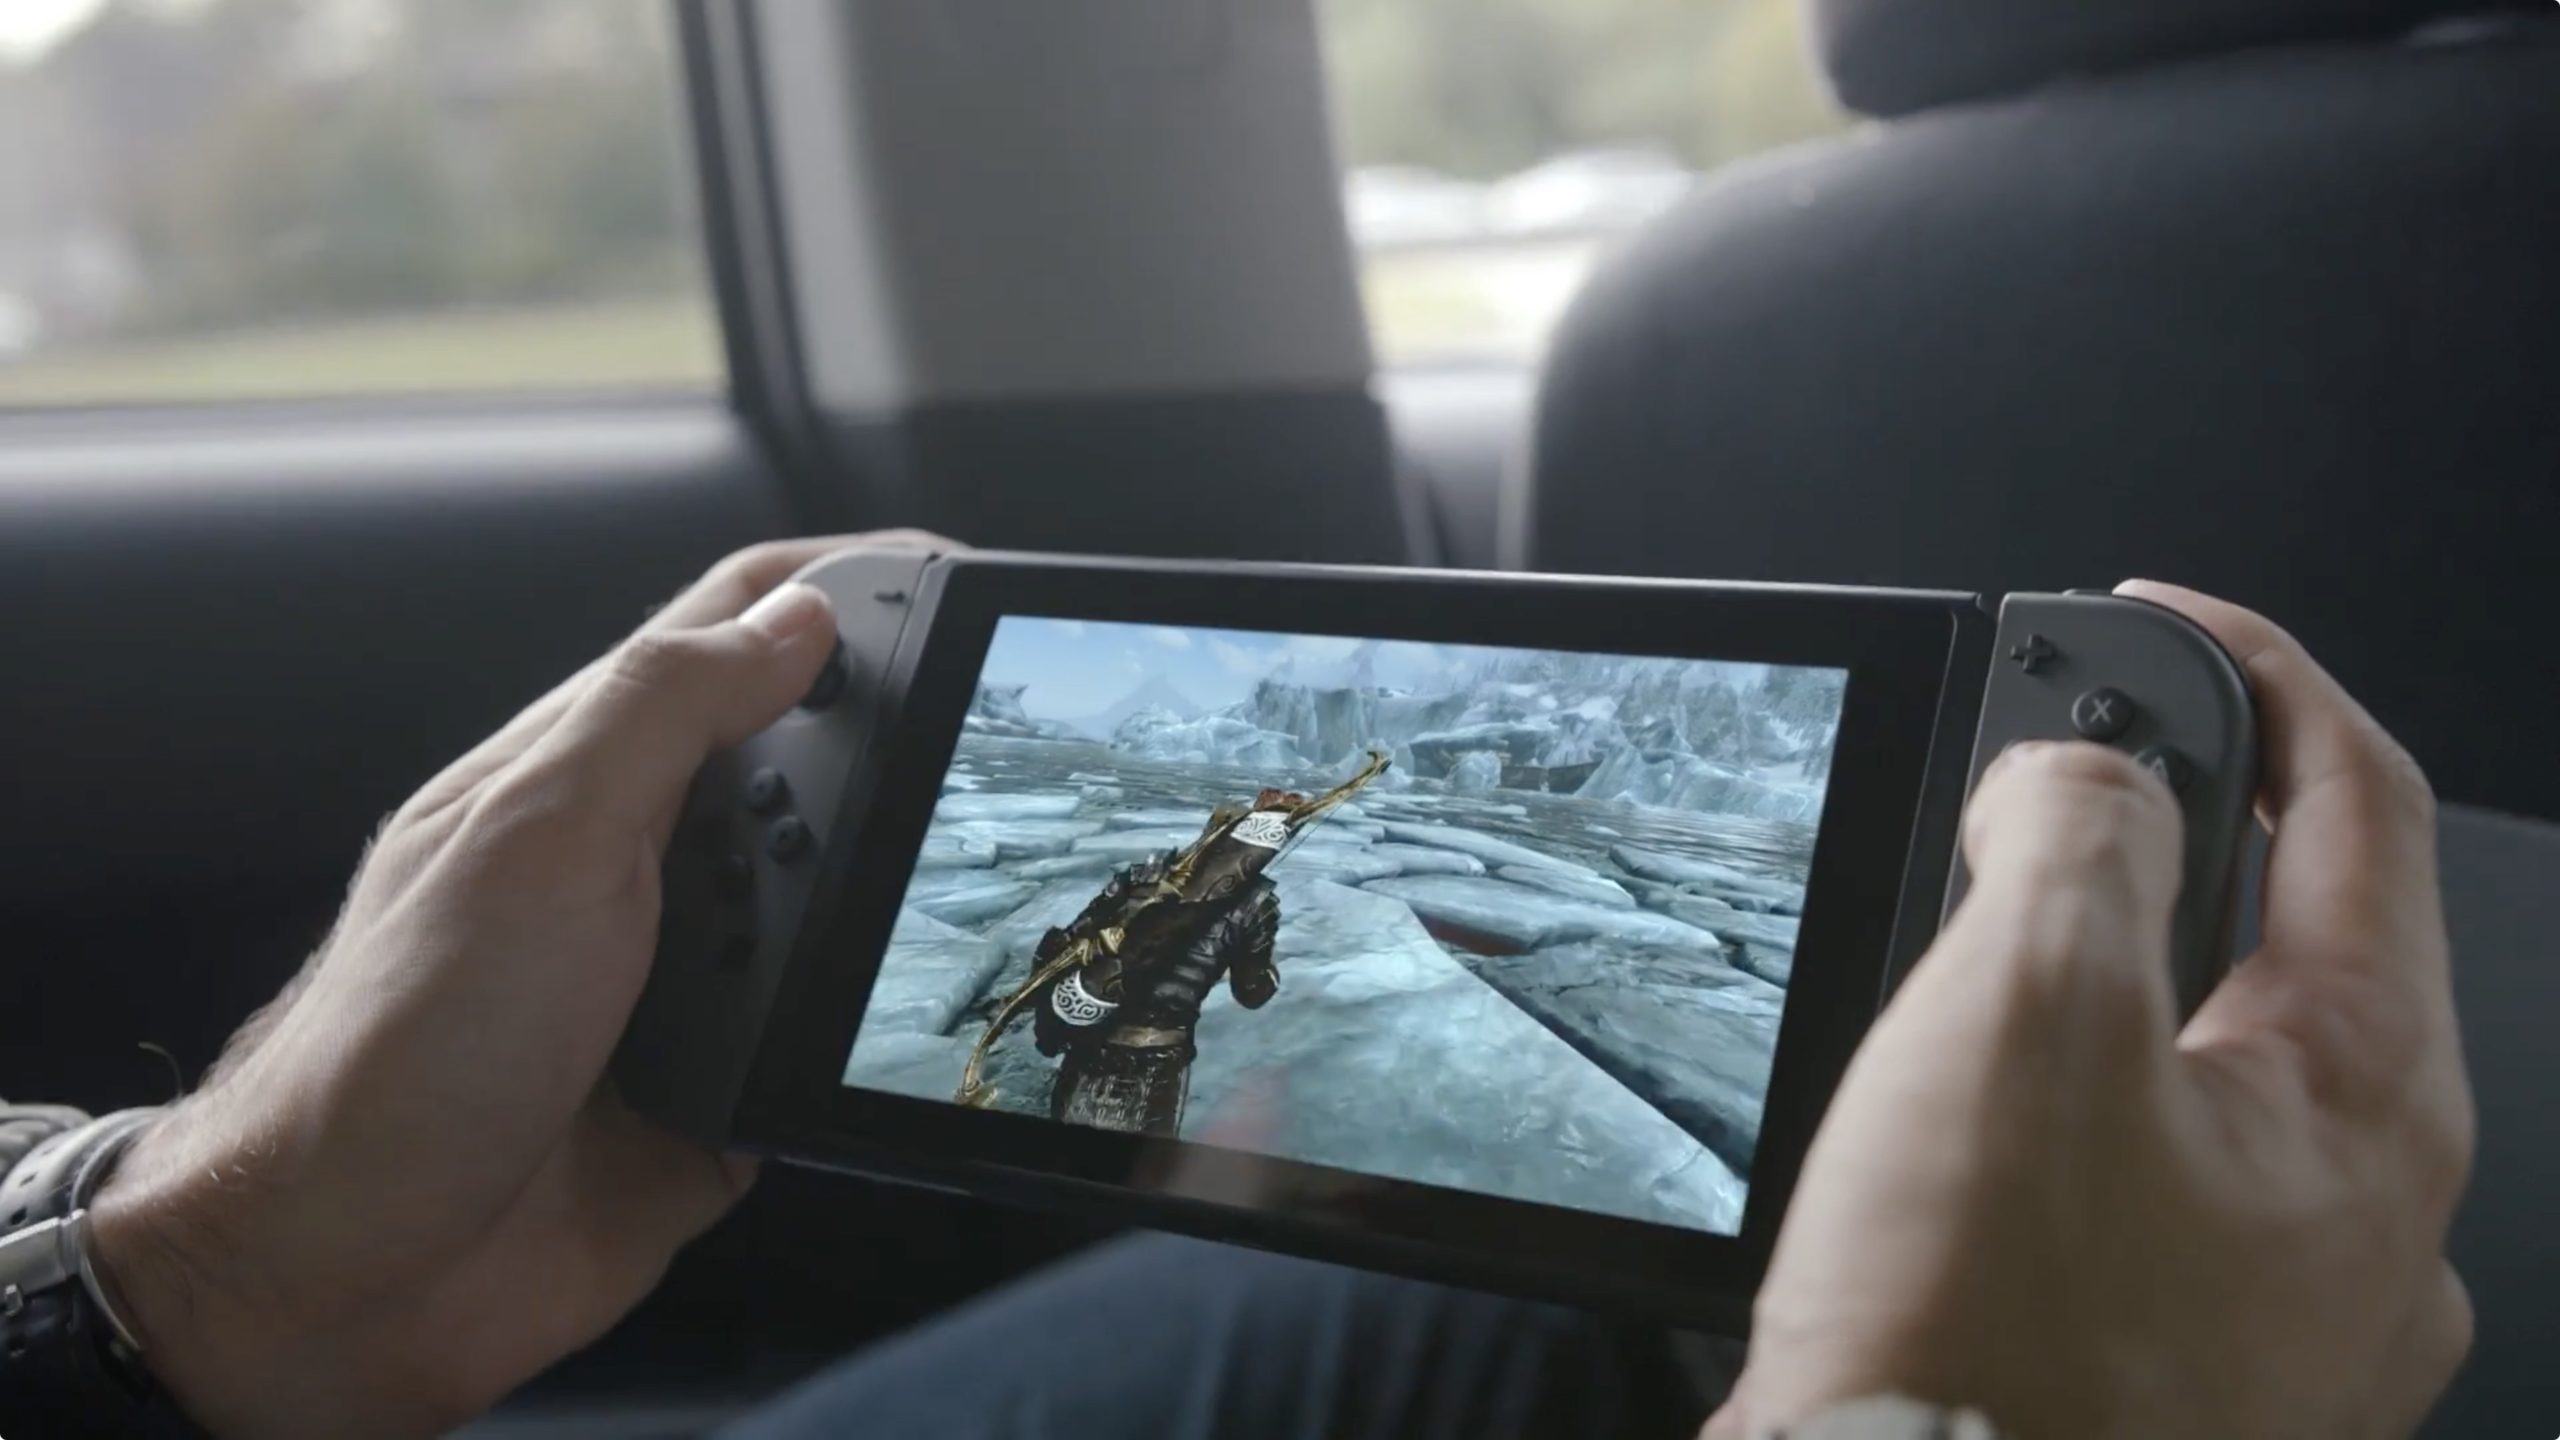 Szef marki PlayStation wypowiedział się na temat Nintendo Switch